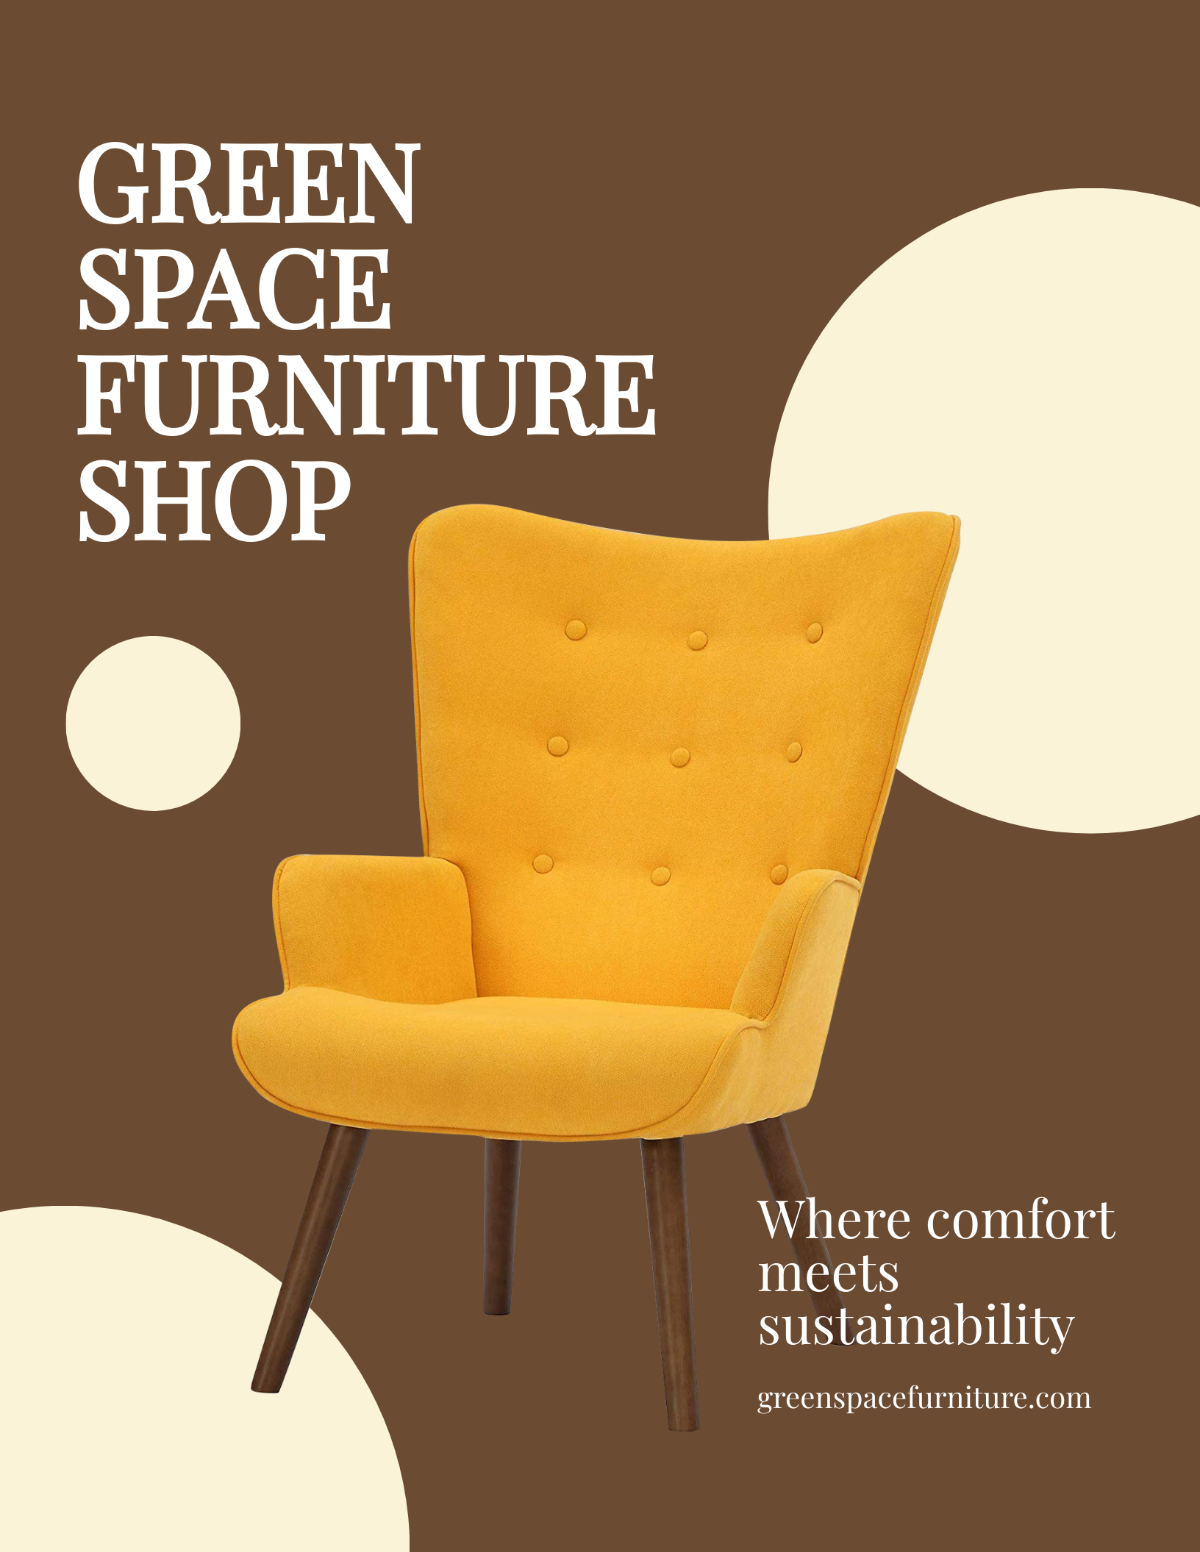 Online Furniture Shop Flyer